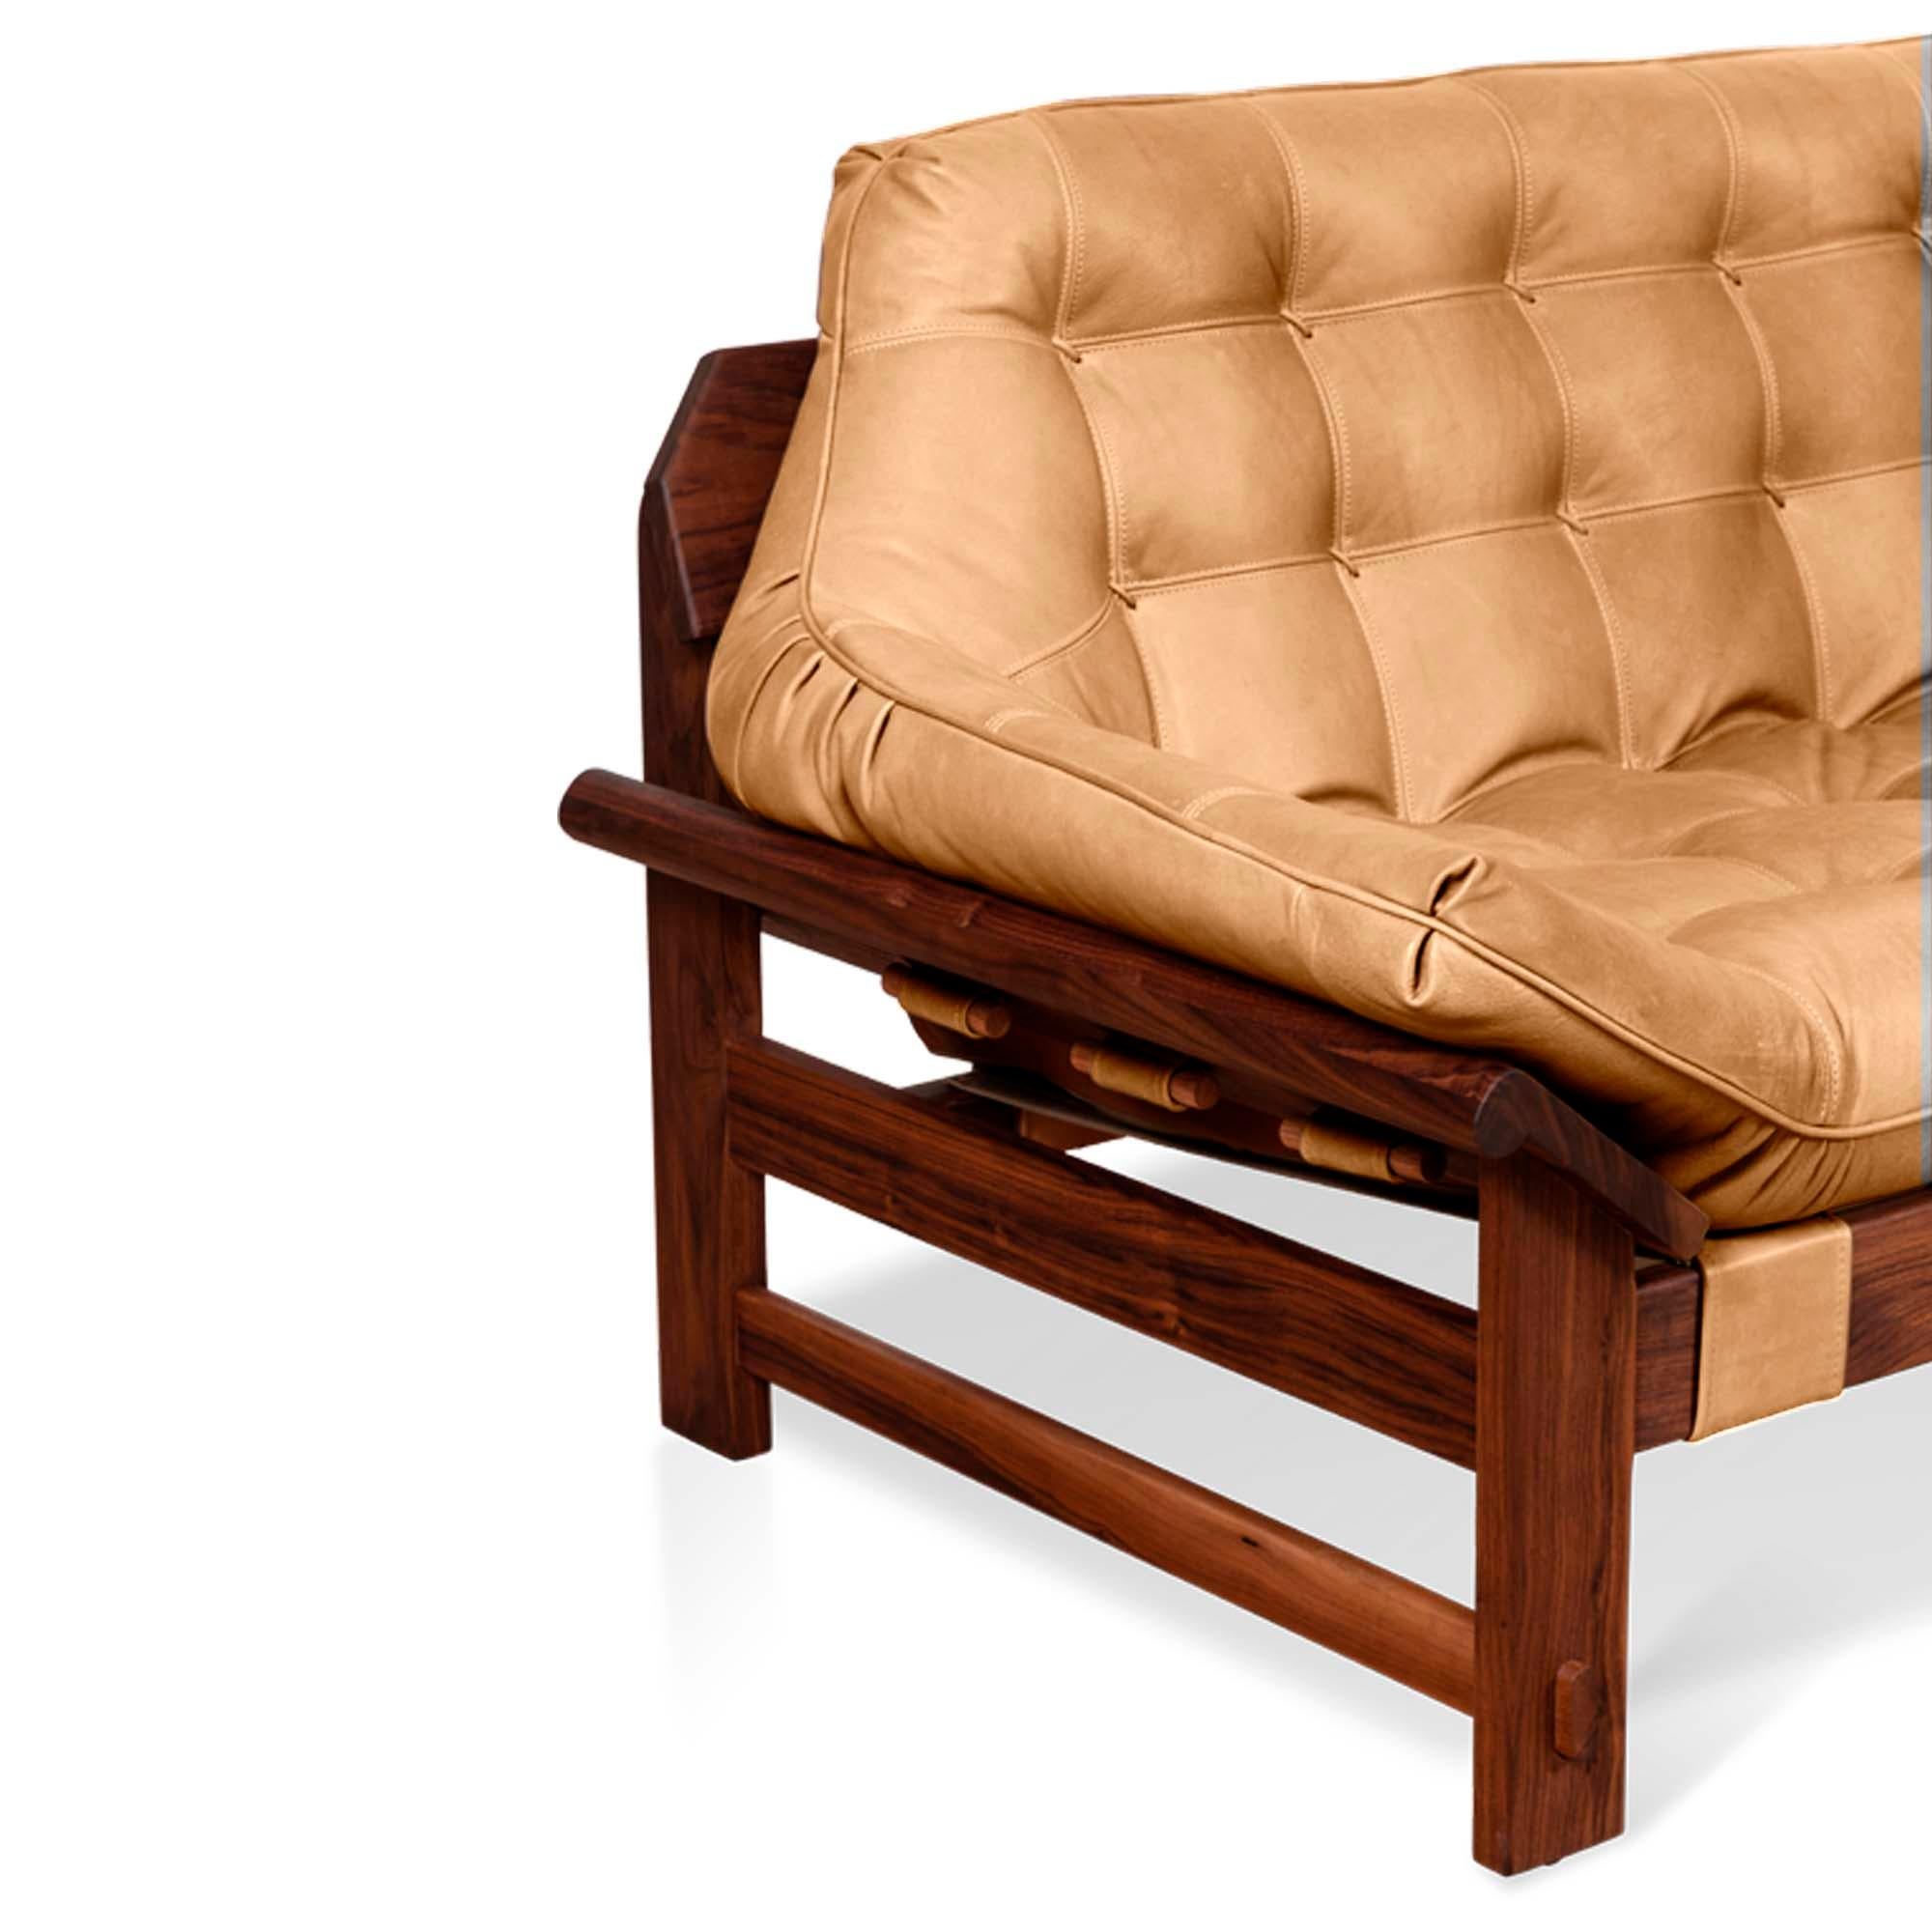 Mid-Century Modern Oiled Walnut and Tan Leather Ojai Sofa by Lawson-Fenning